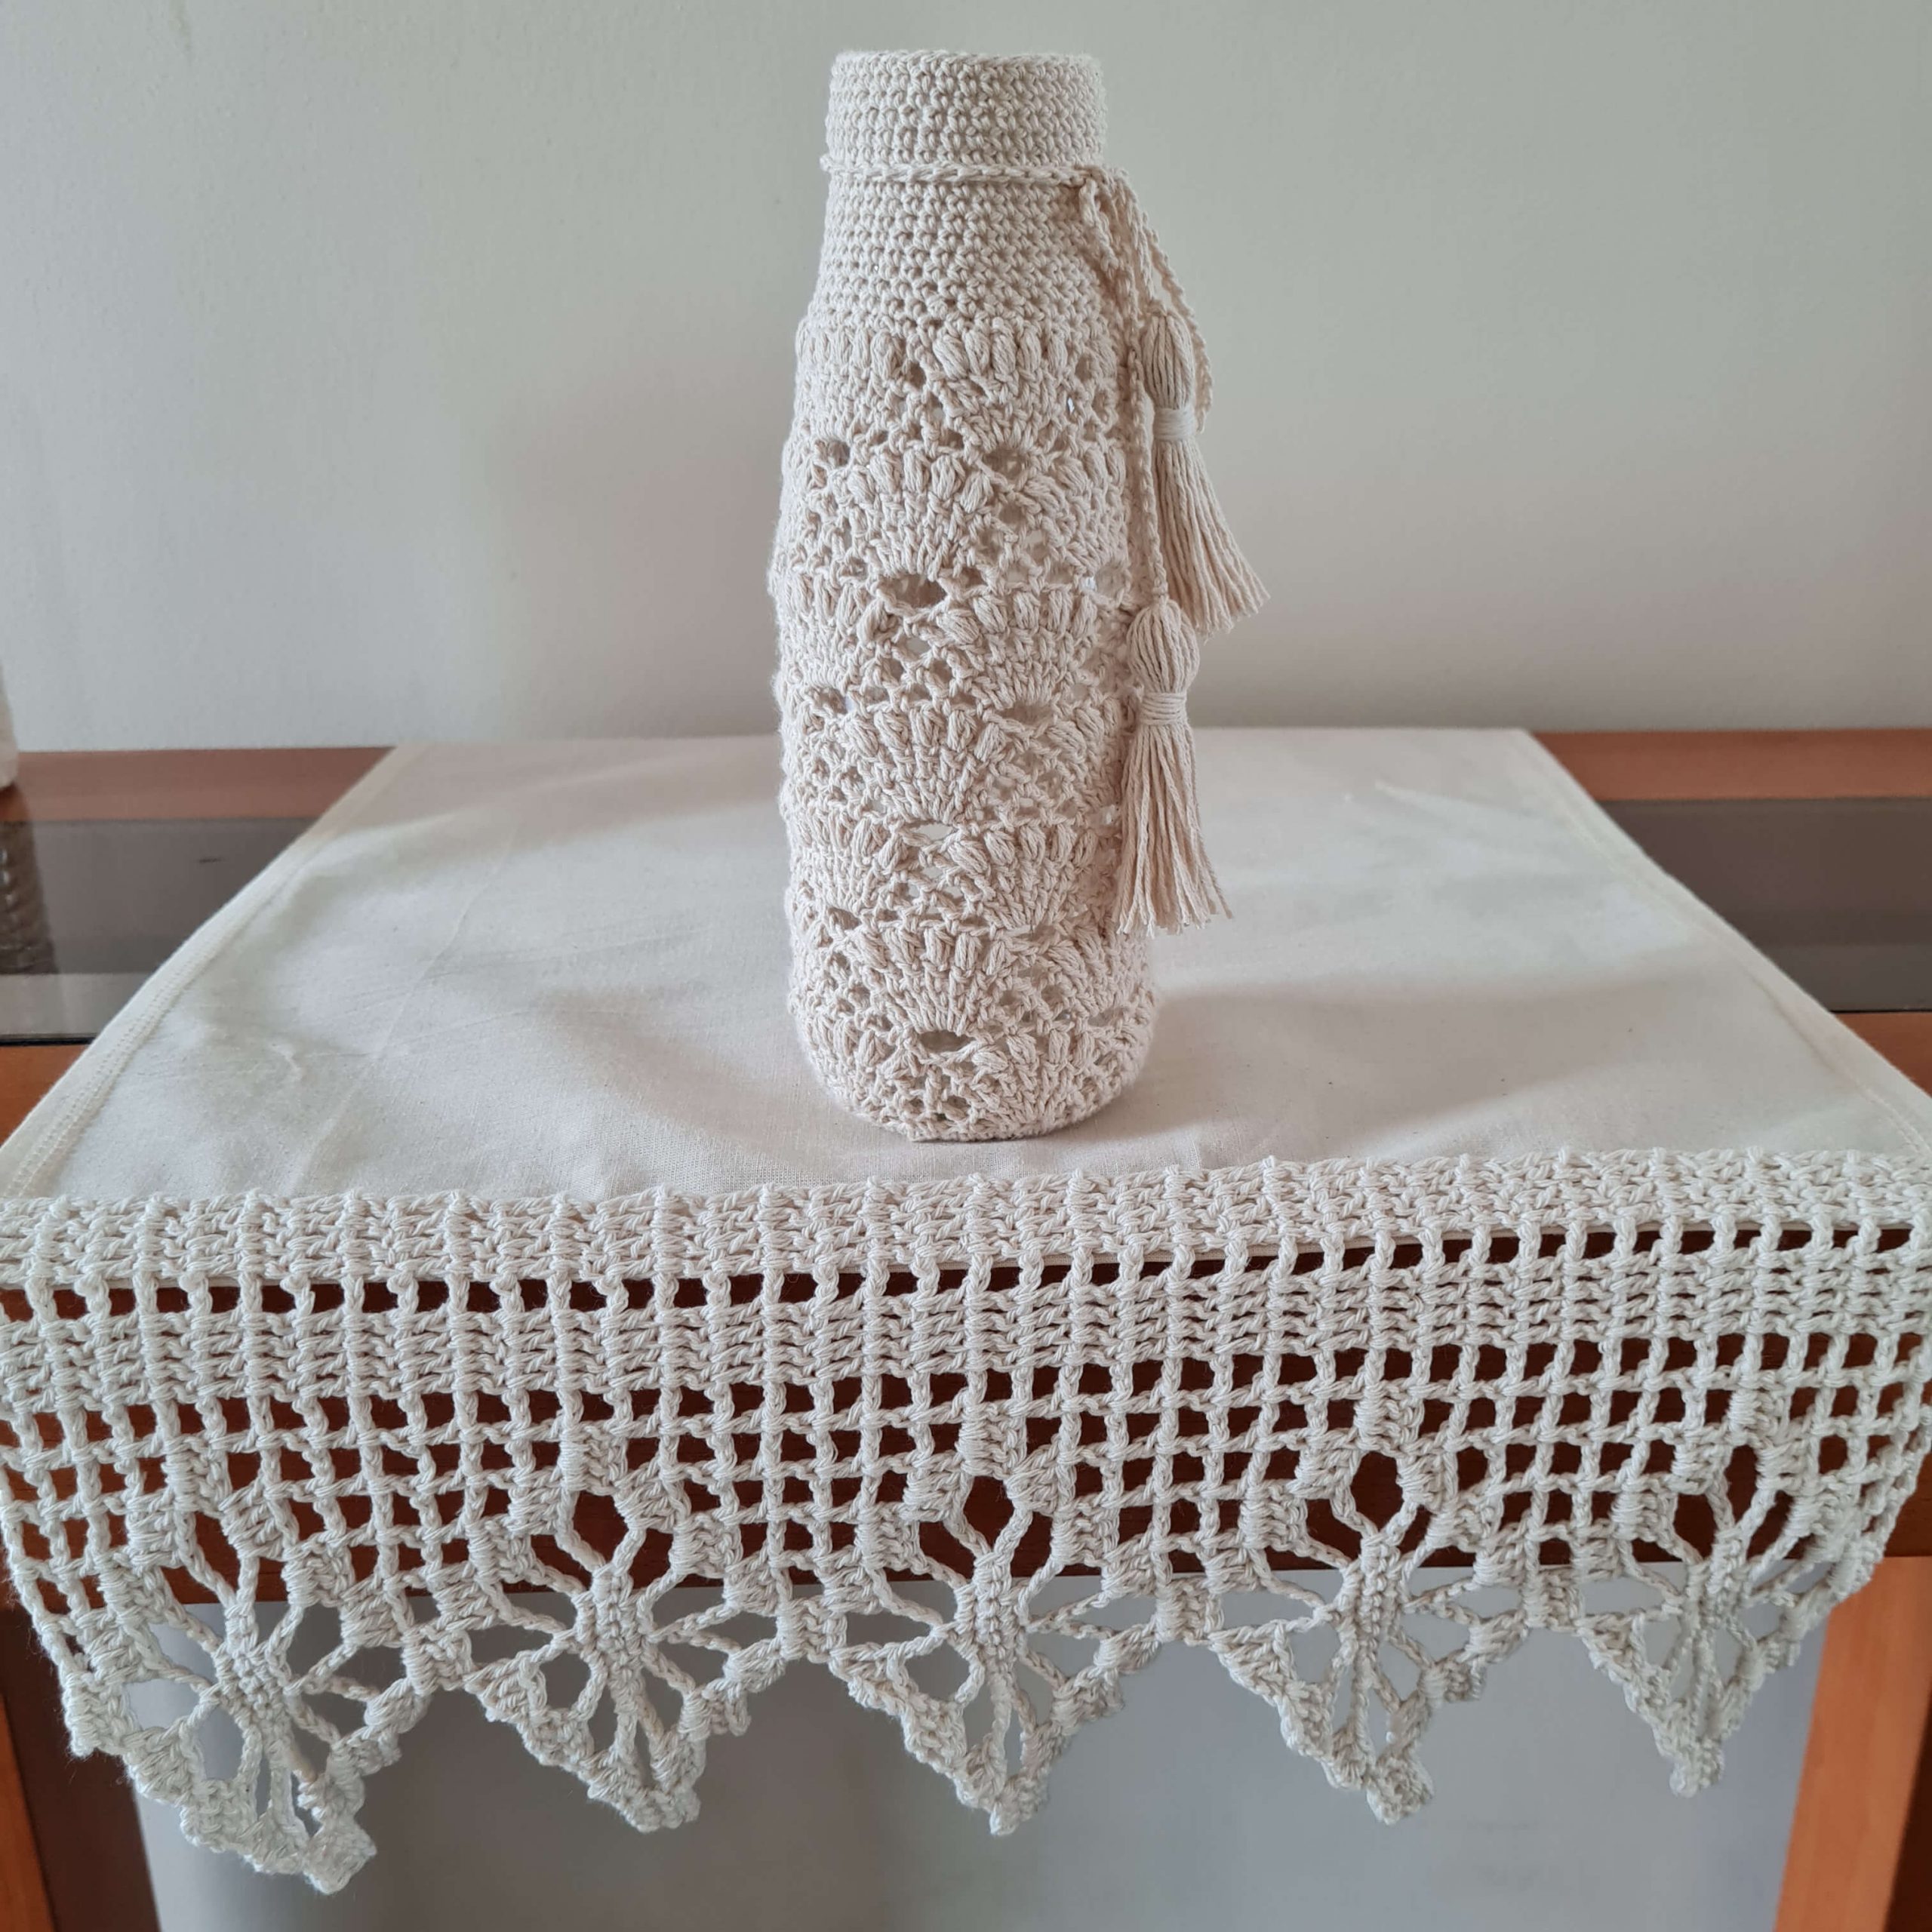 Botella decorada con tejido a crochet 3